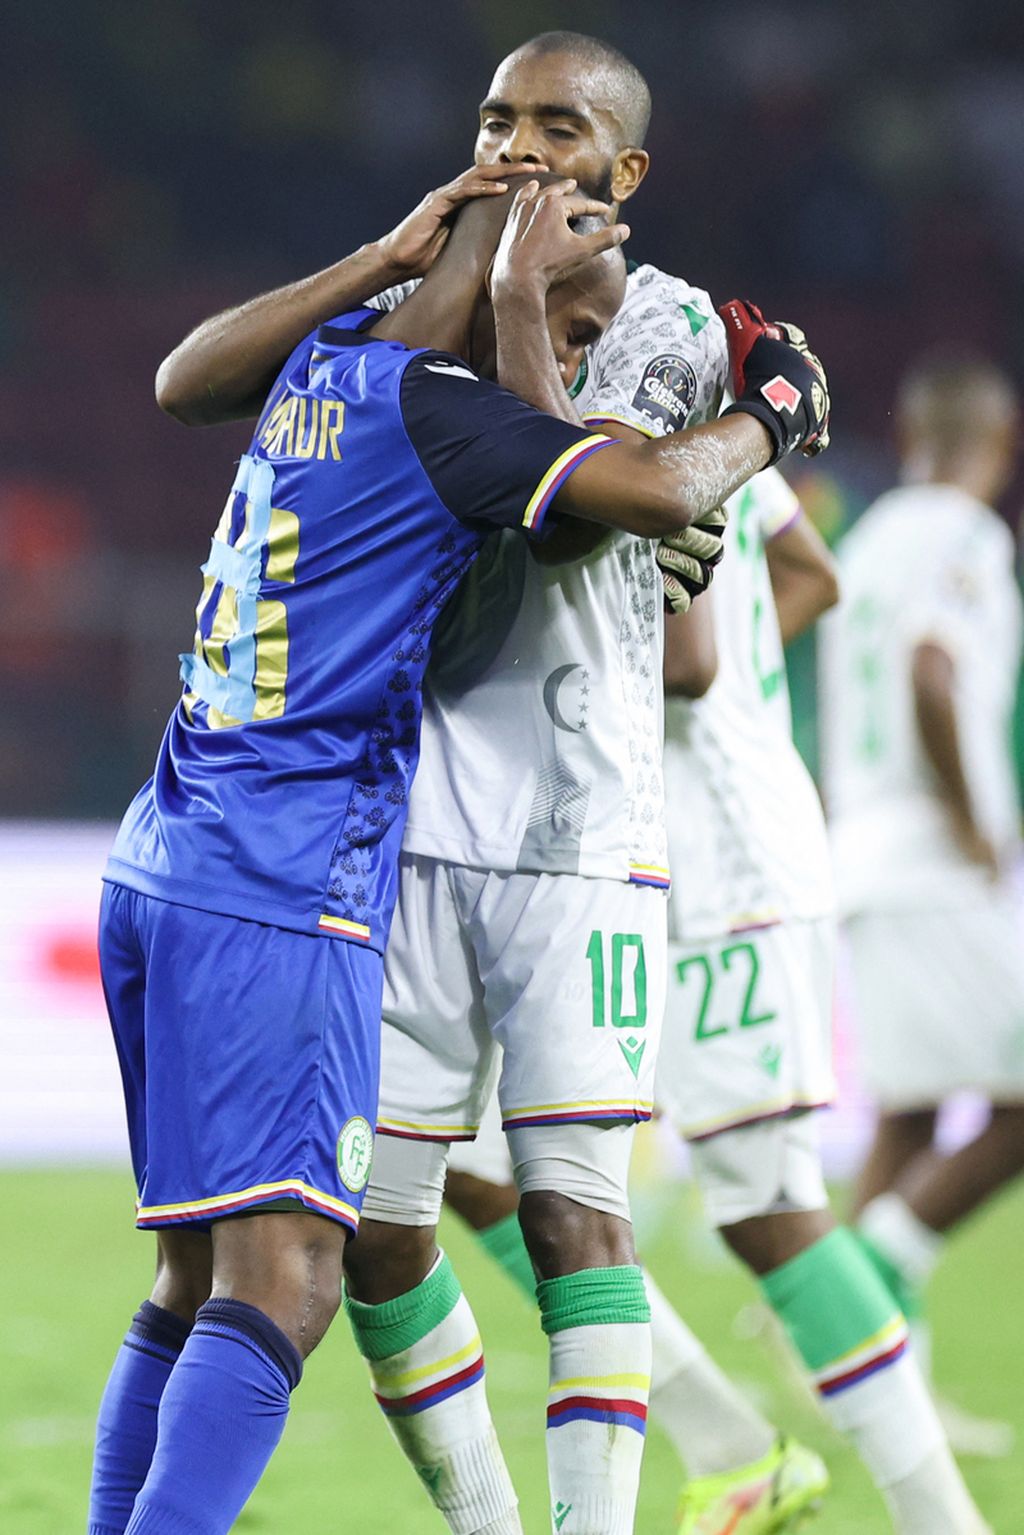 Gelandang Komoro, Youssouf MChangama (kanan), memeluk rekan setimnya, Chaker Alhadhur, seusai laga melawan Kamerun pada babak 16 besar Piala Afrika 2021 , Selasa (25/2/2022) dini hari WIB, di Stadion Stadion Paul Biya, Kamerun. Keduanya tampil brilian meski Komoro tumbang 1-2 dari tim tuan rumah.